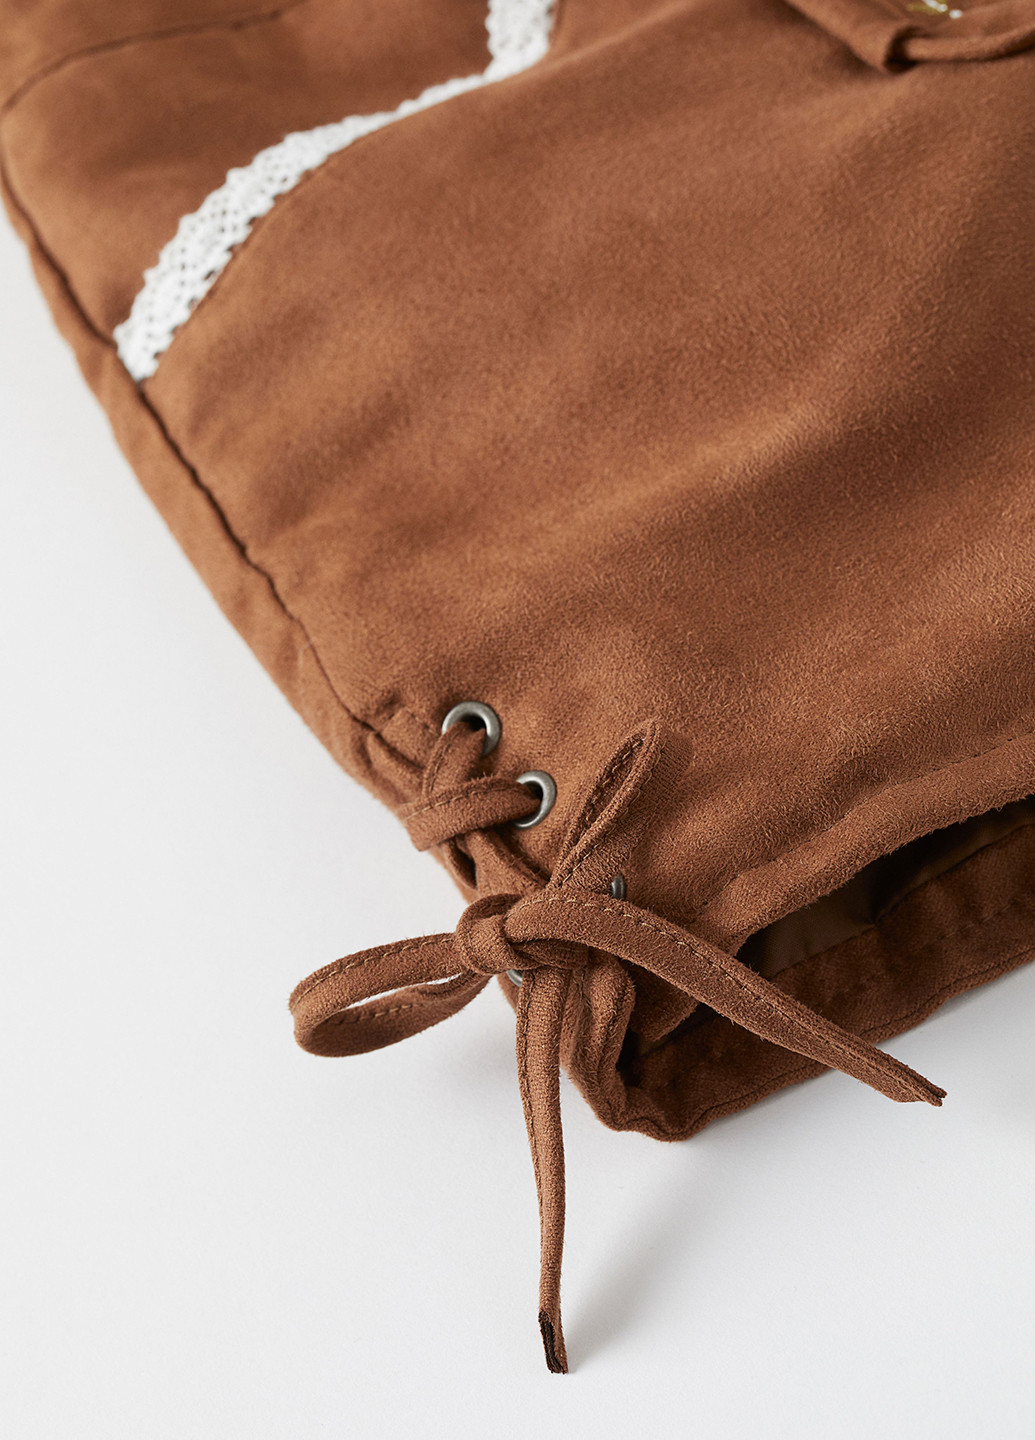 Комбинезон H&M комбинезон-шорты рисунок коричневый кэжуал полиэстер